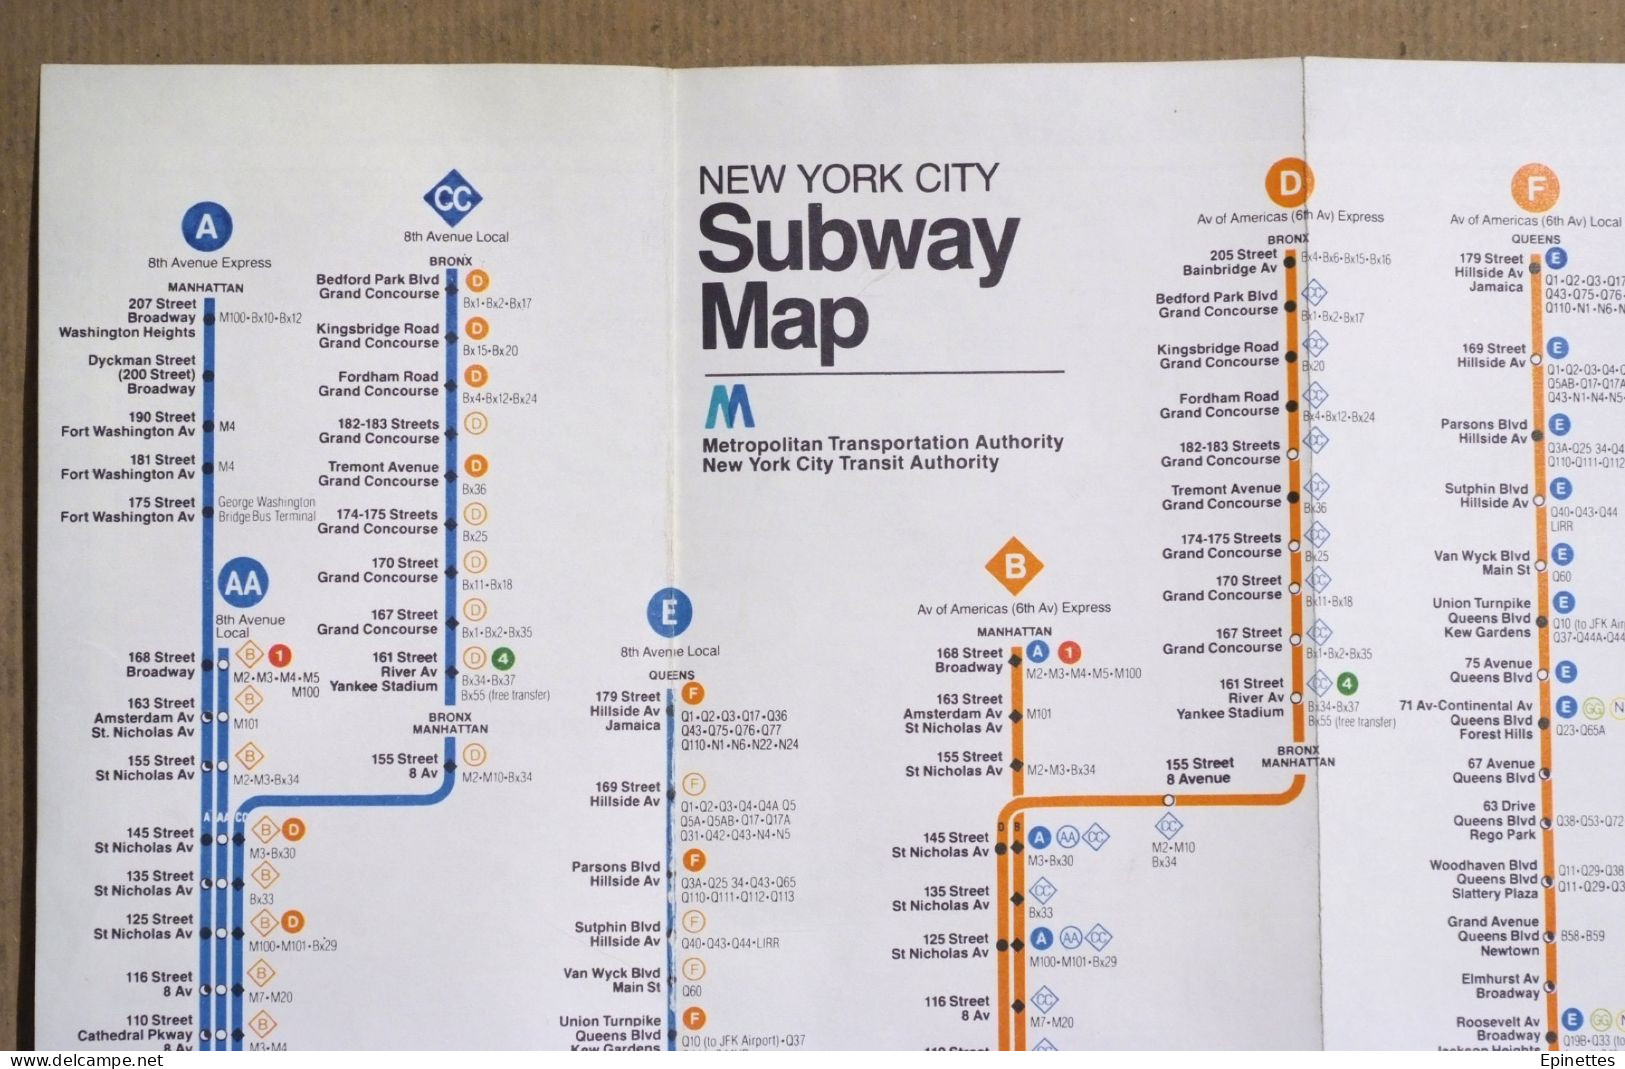 Plan Dépliant Du Métro De New-York, USA, NY City Subway Map, 1979-80 - Monde